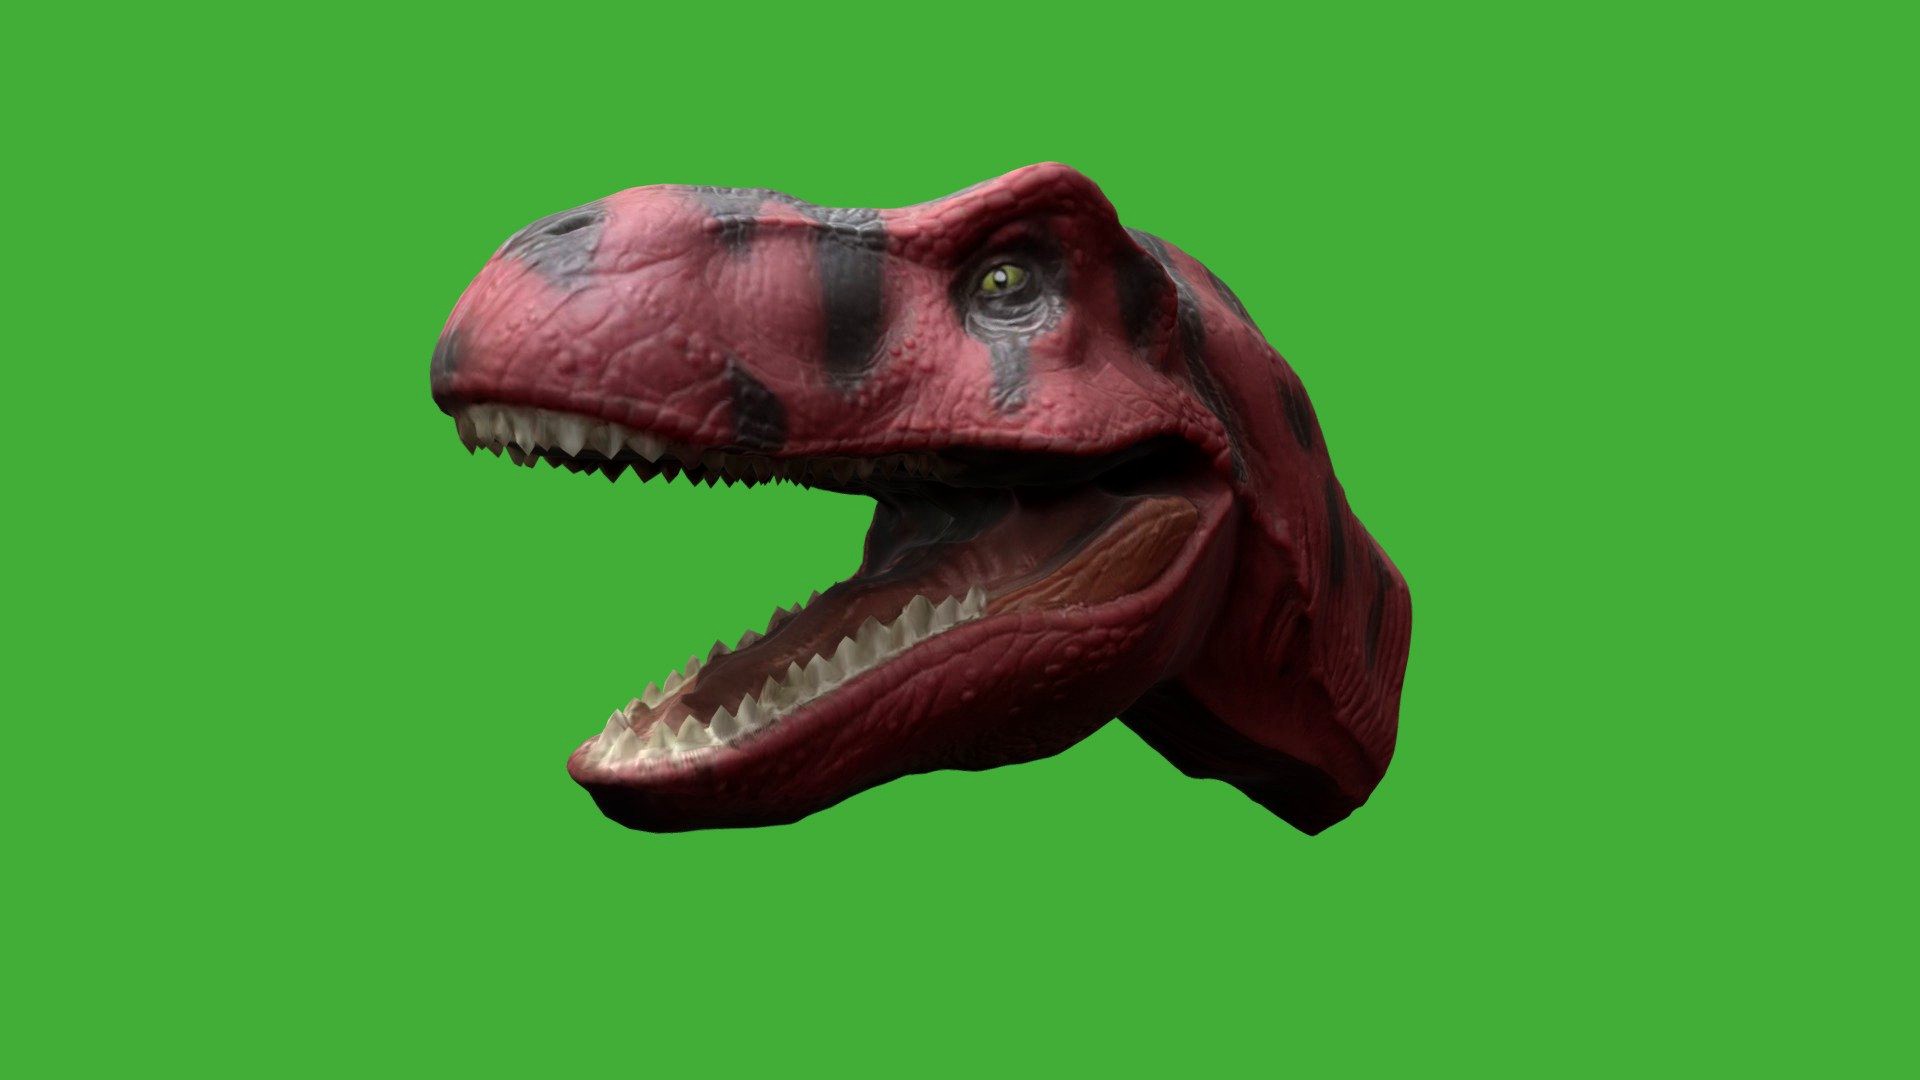 Tyrannosaurus Rex head